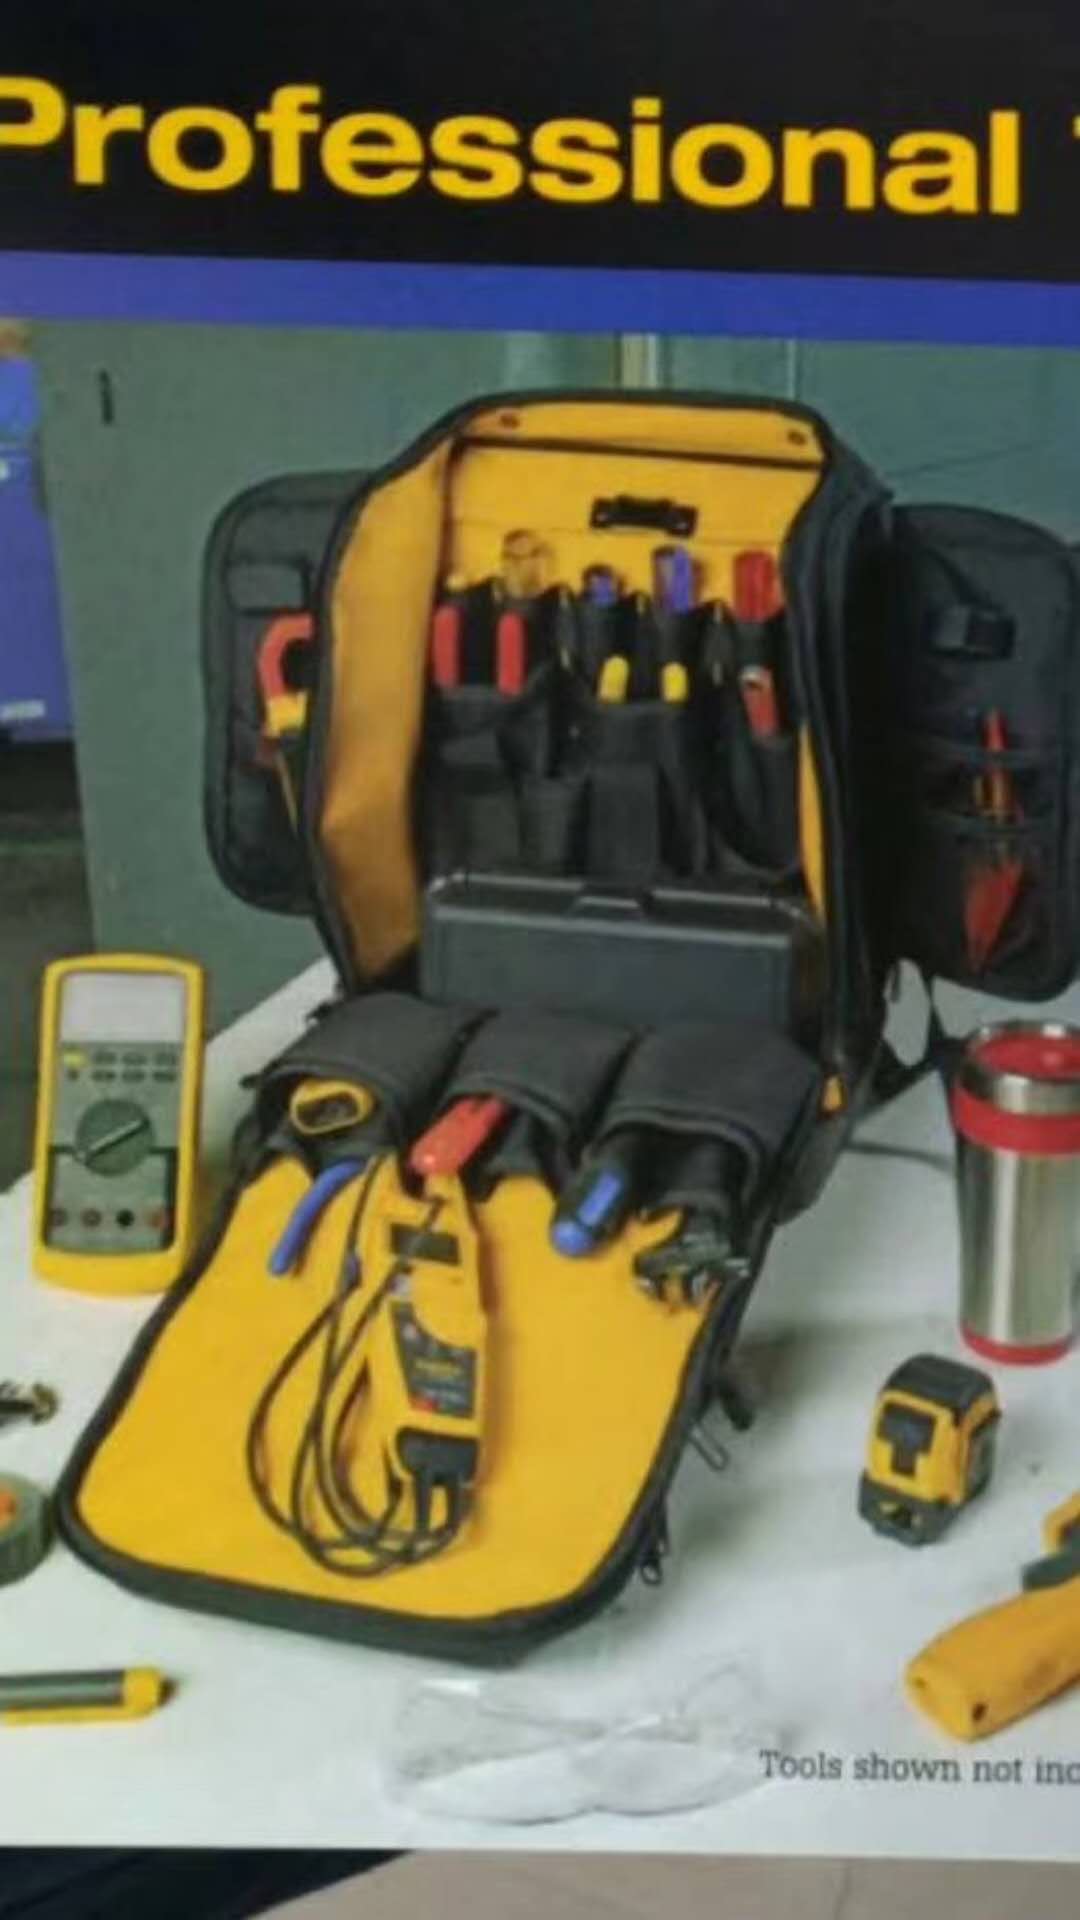 eva工具包盒有耐高温的特性